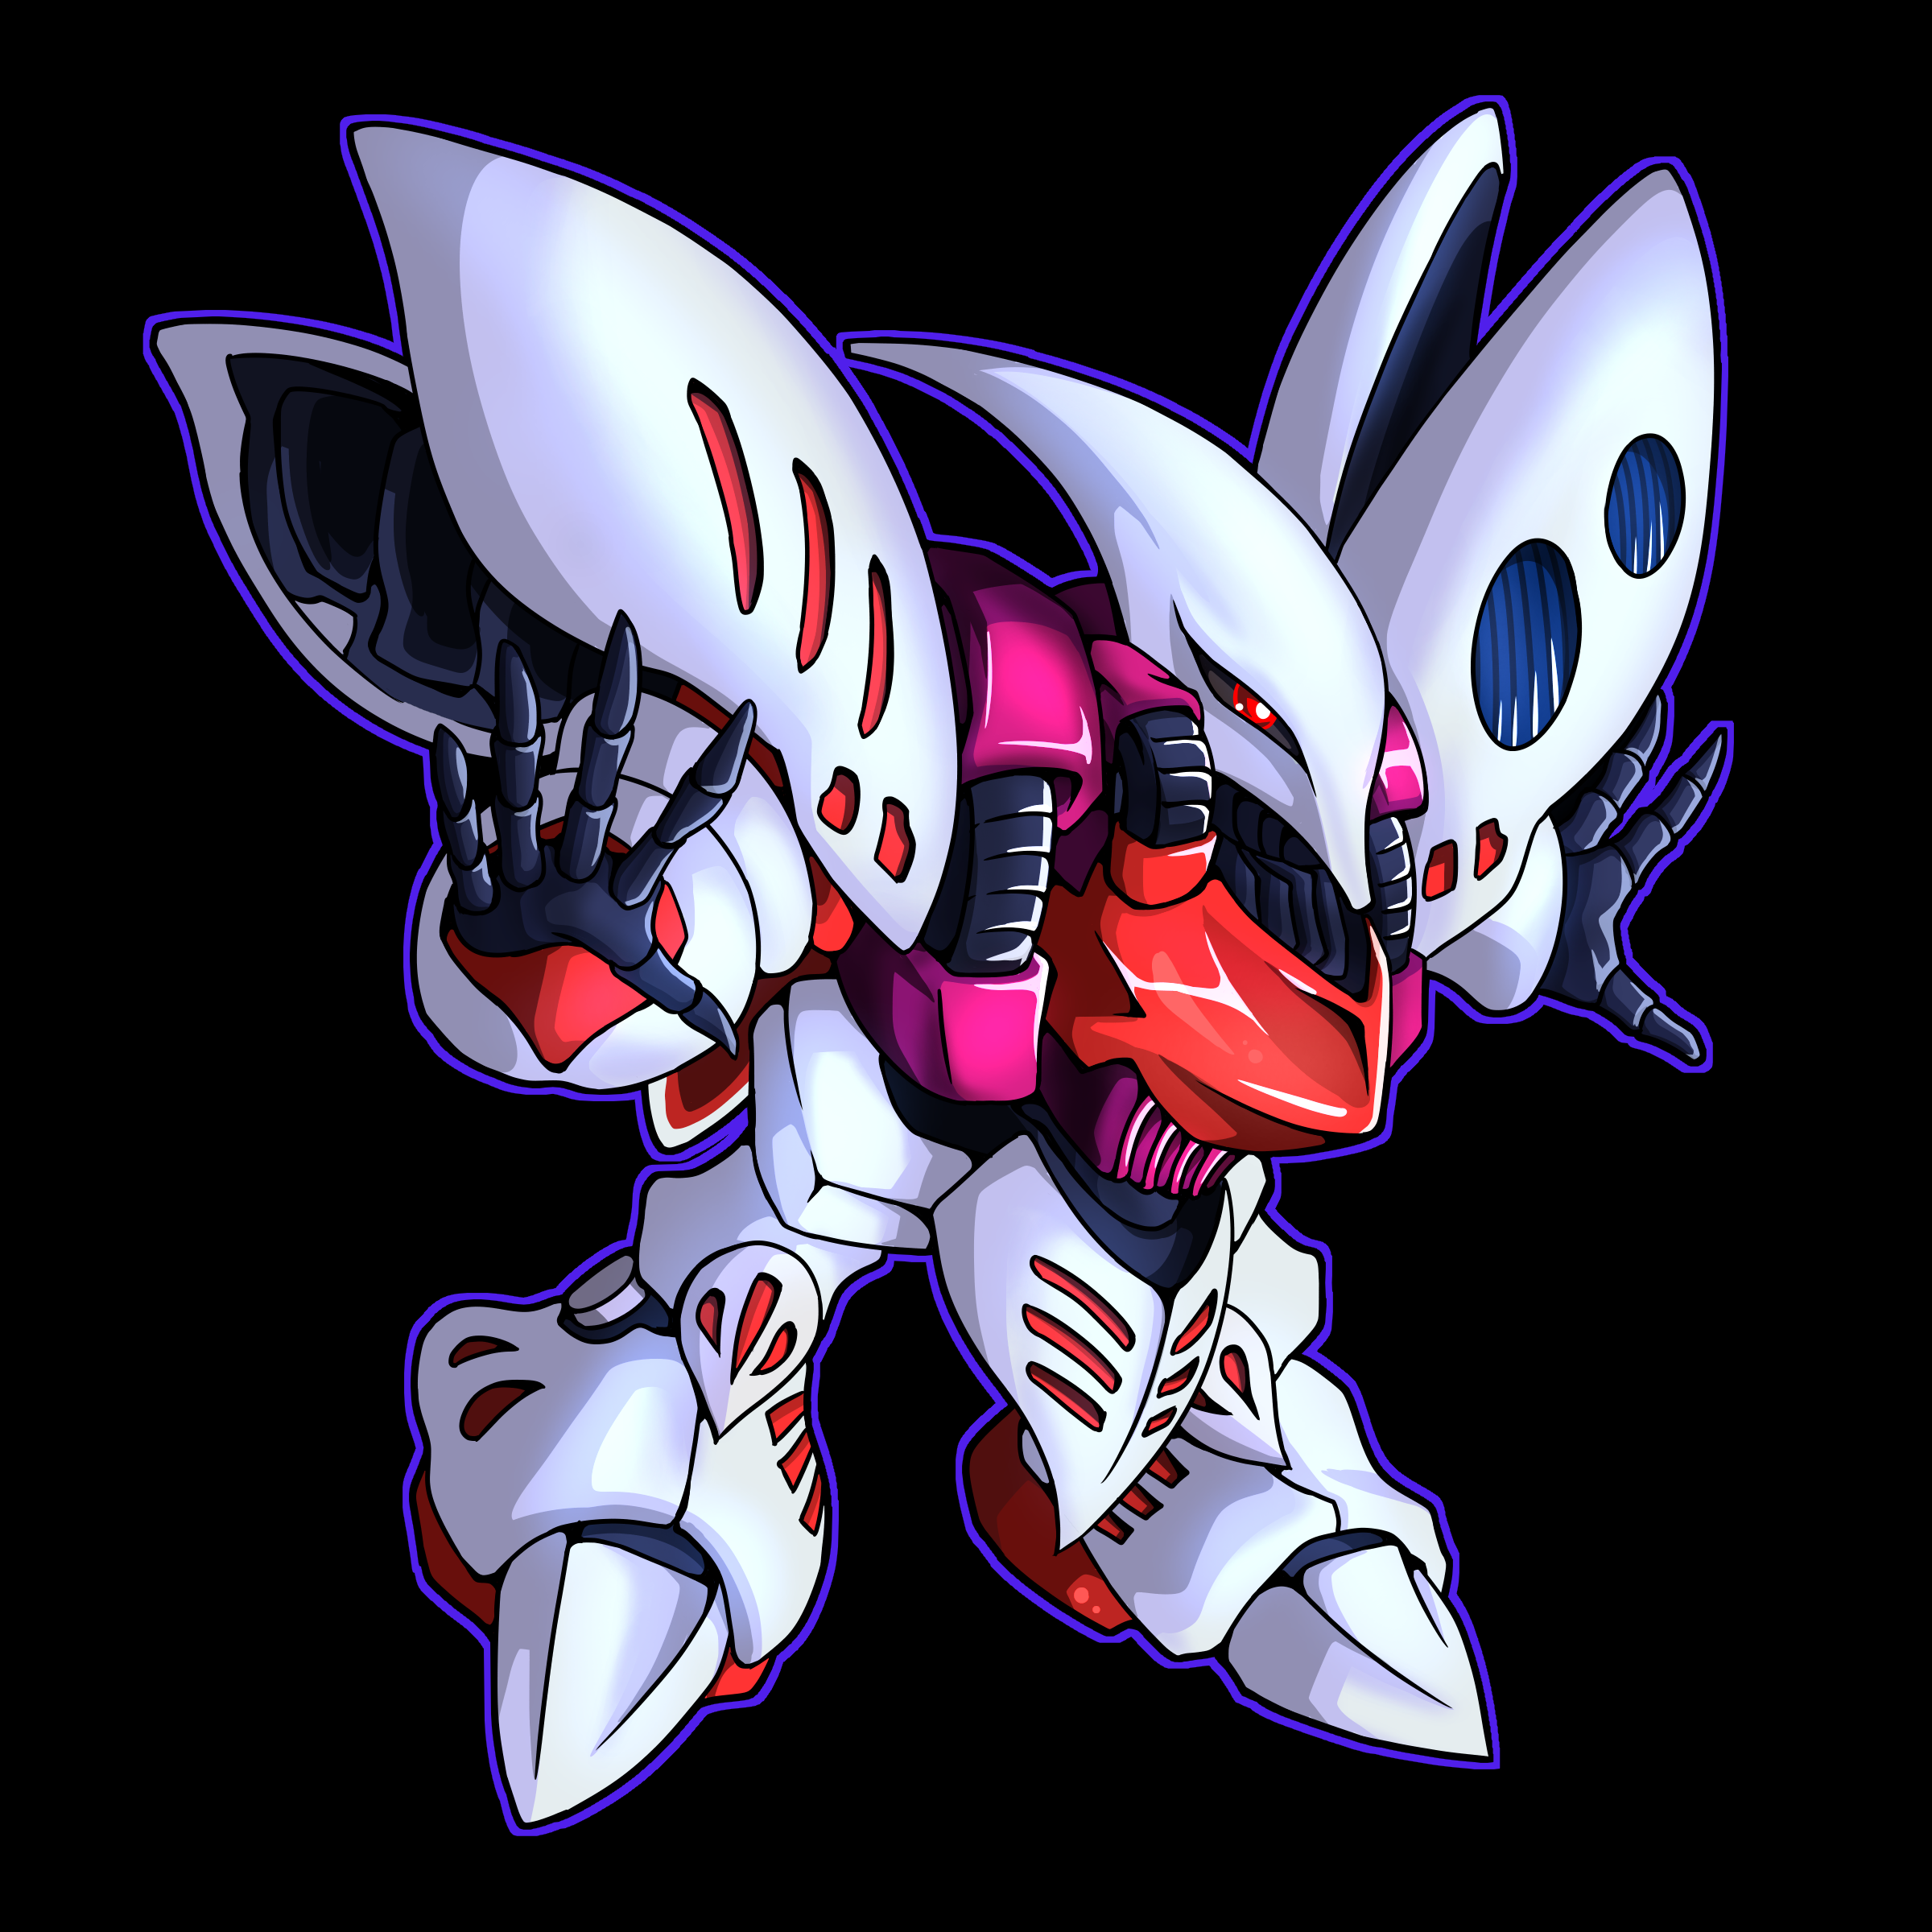 Mobile Suit Mobile Suit Zeta Gundam Mobile Suit Gundam ZZ Qubeley Anime Mechs Super Robot Wars Artwo 2400x2400